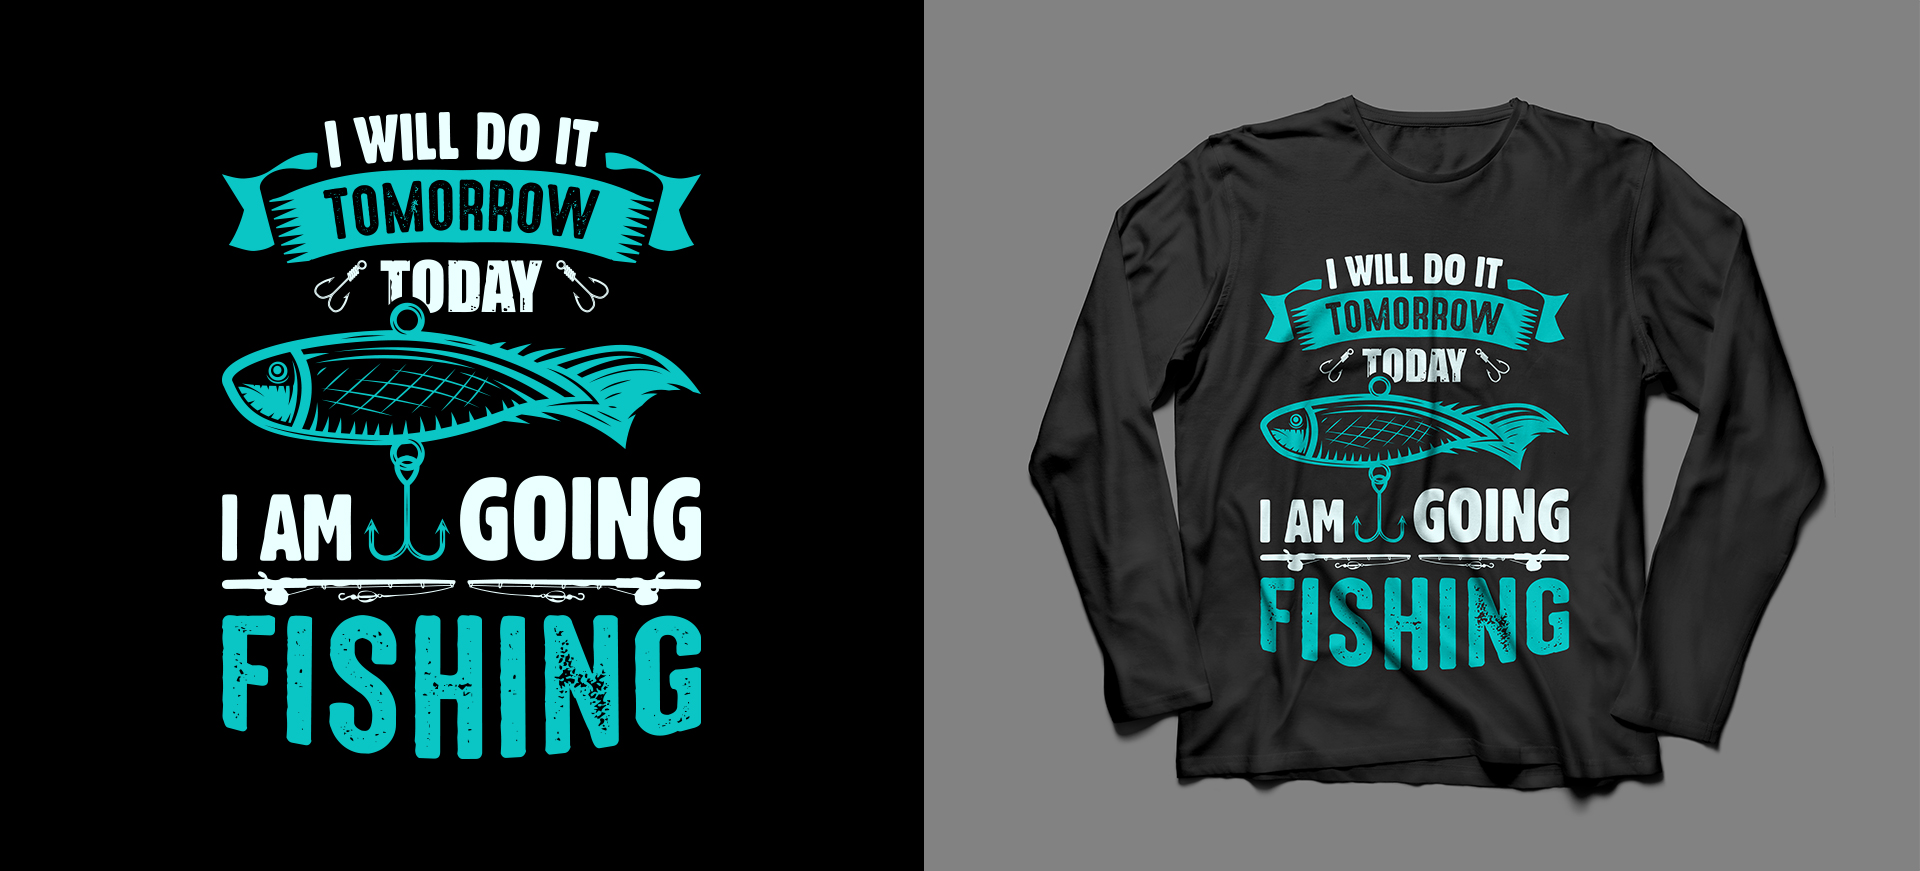 fishing t shirt design bundle - Fishing t shirt designs - MasterBundles